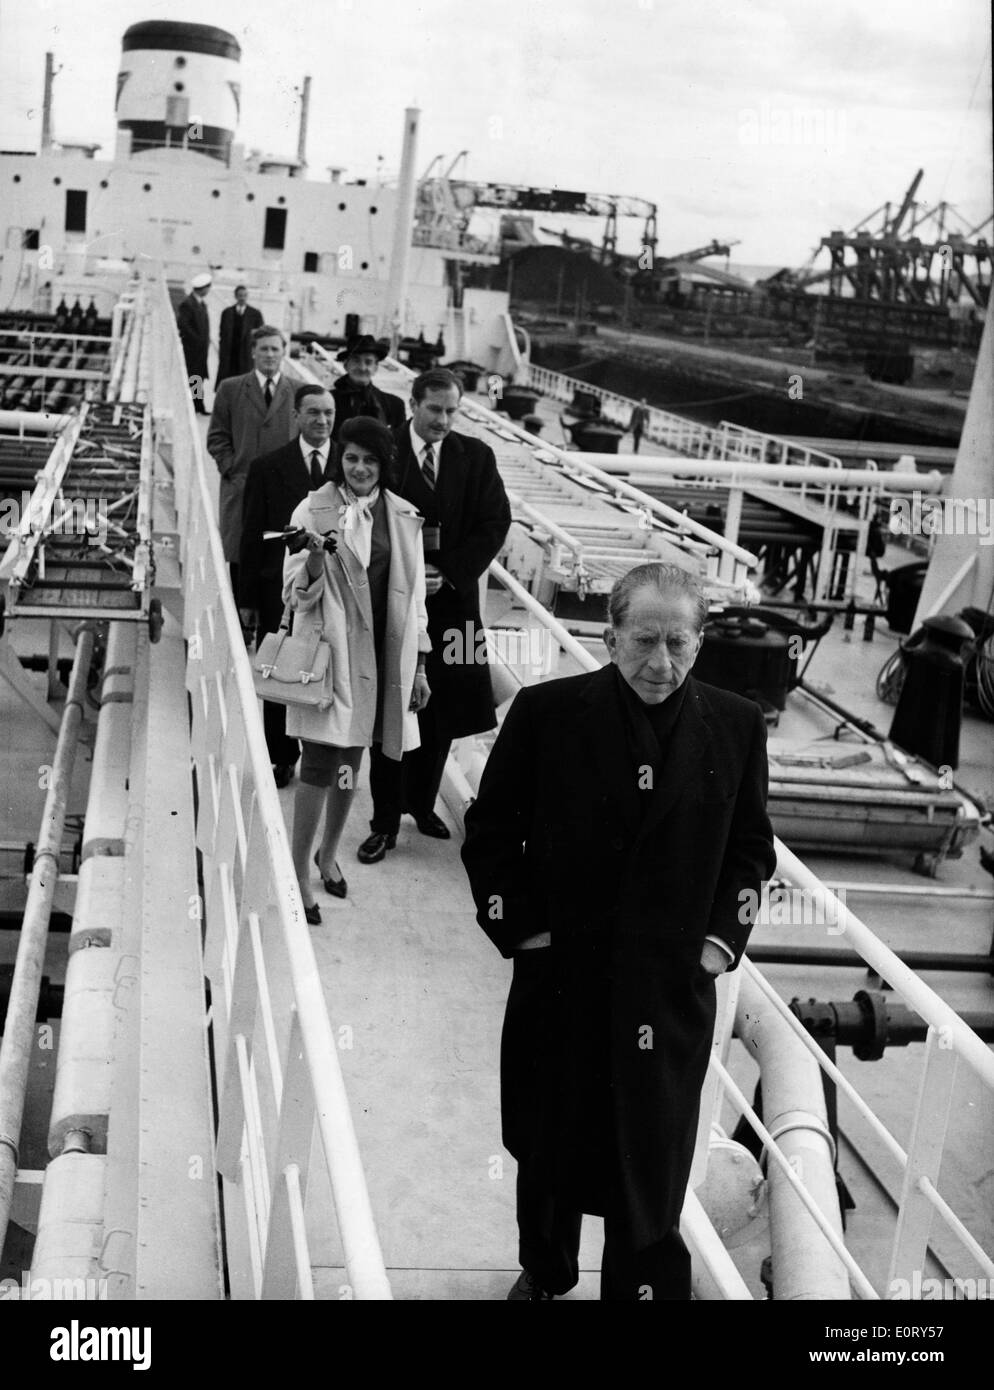 J. Paul Getty industriel arrive sur un bateau Banque D'Images